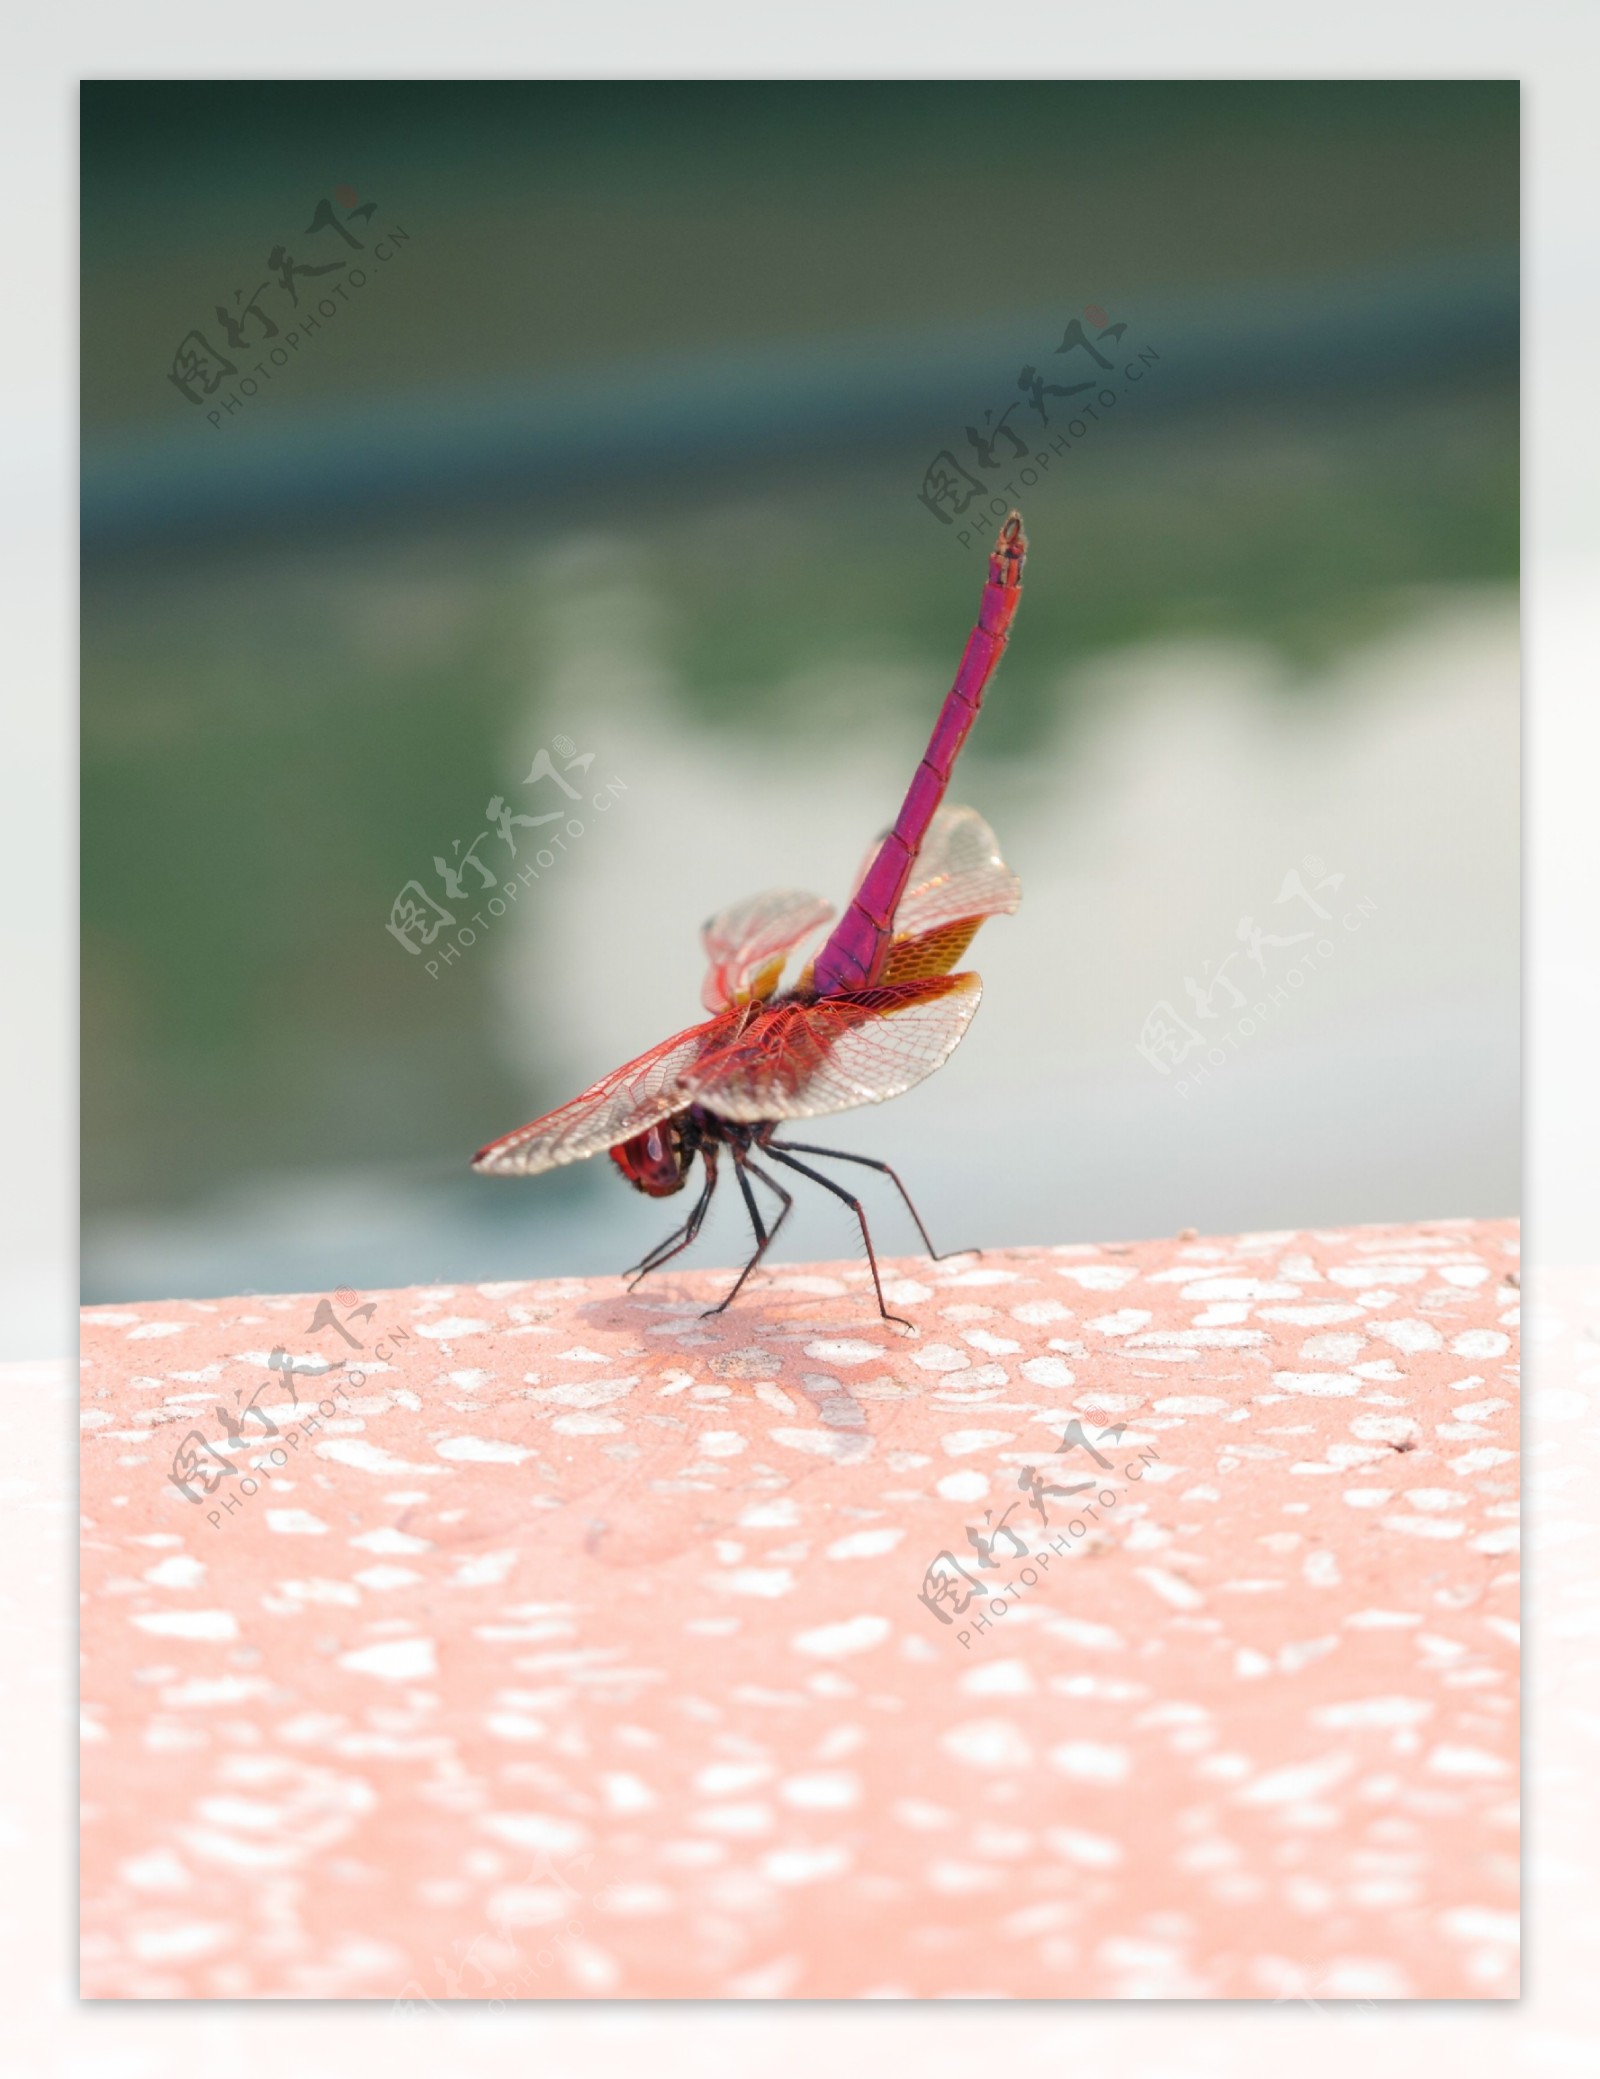 红蜻蜓特写图片